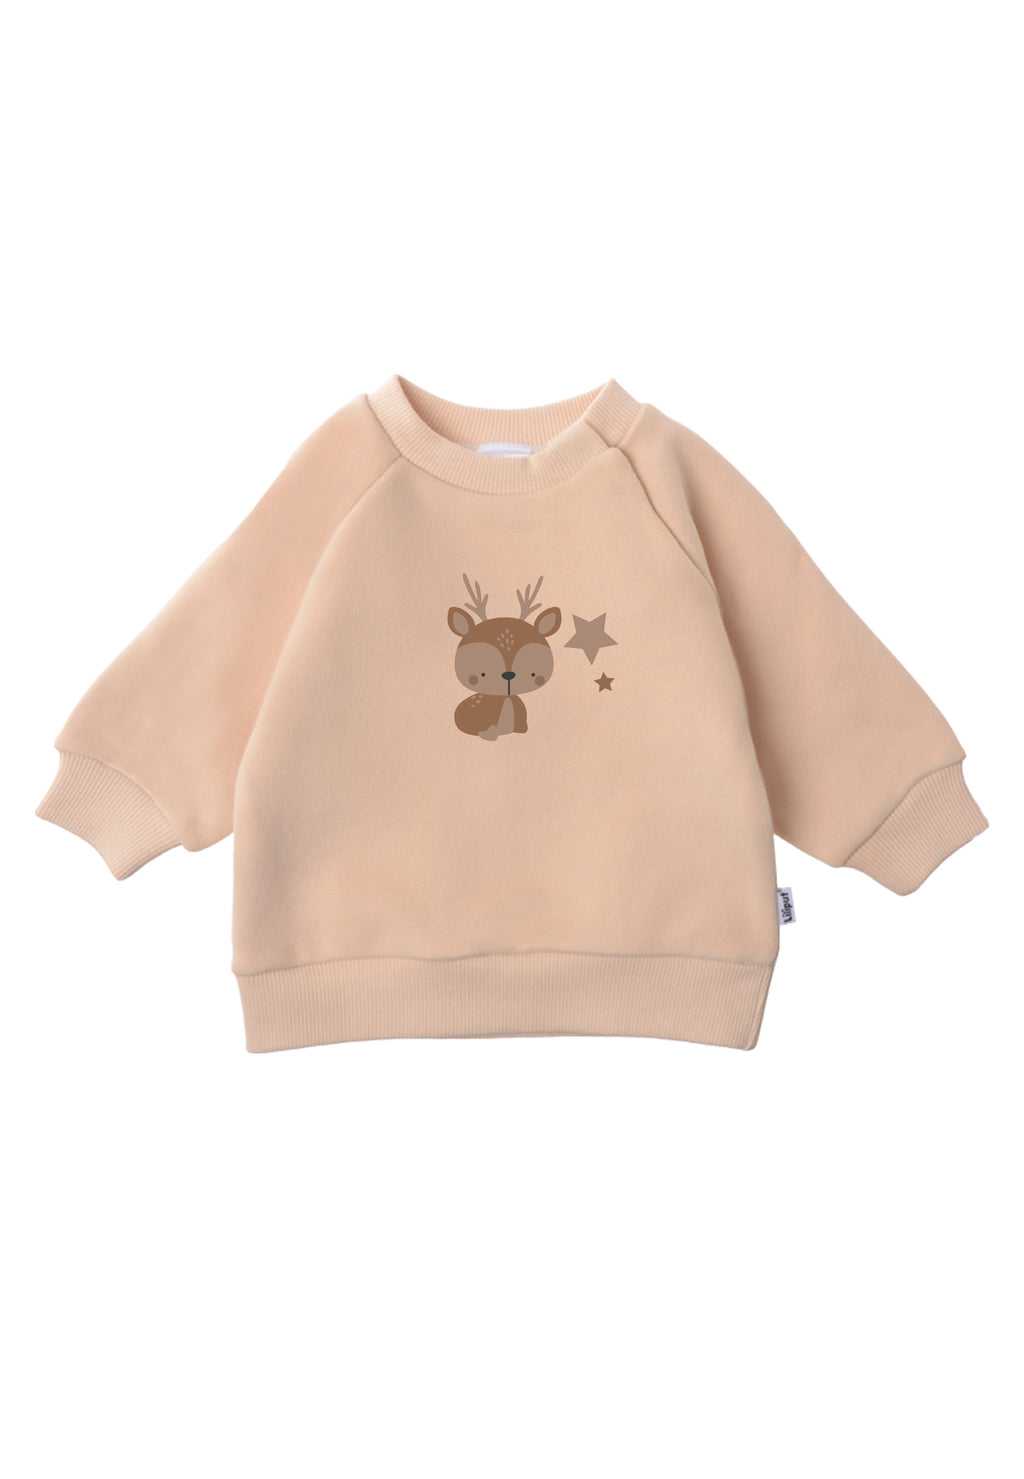 Coole Baby Sweatshirts & Strickpullover von Liliput – Liliput